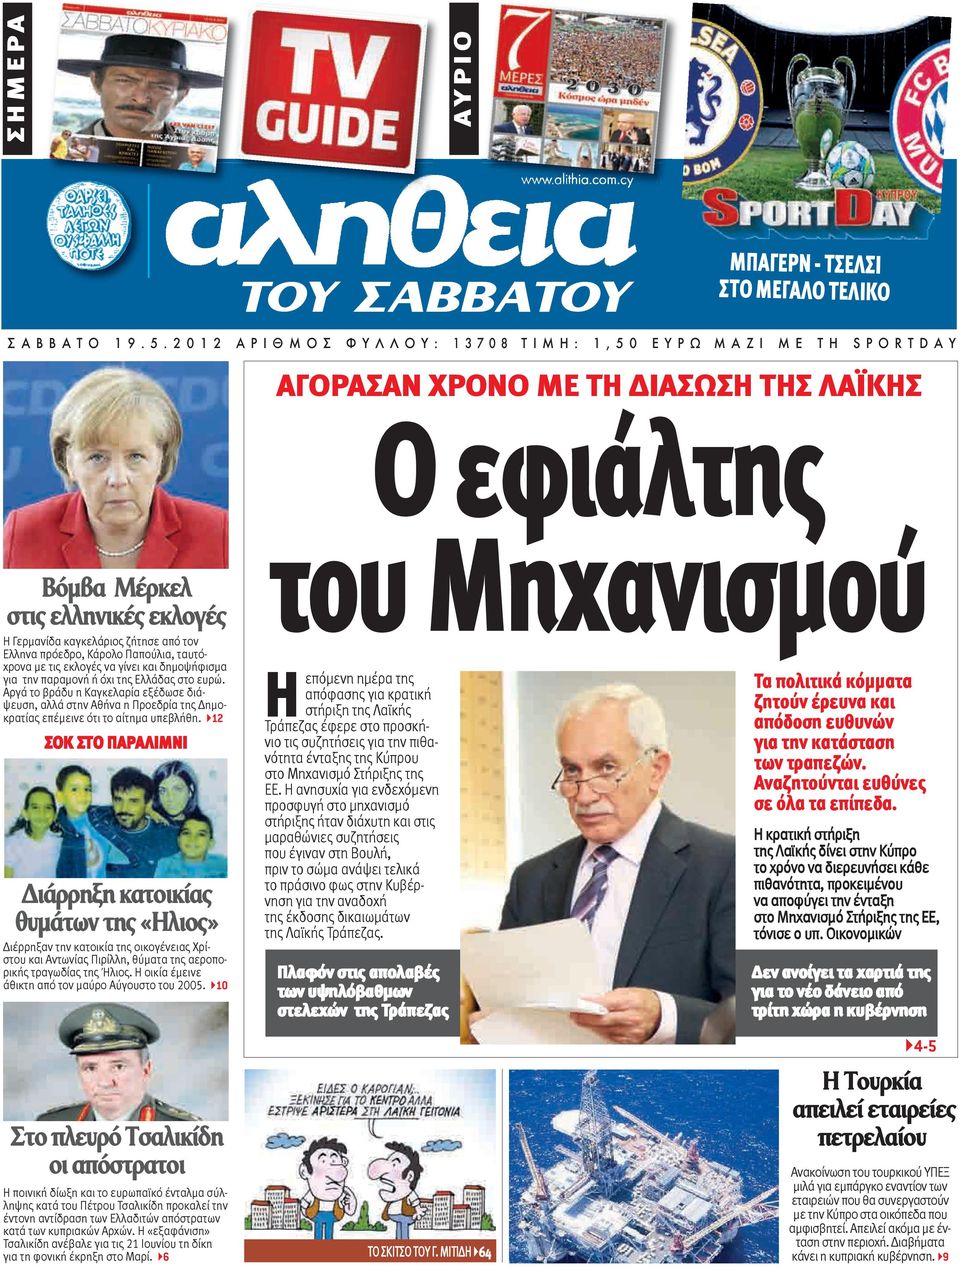 Γερμανίδα καγκελάριος ζήτησε από τον Ελληνα πρόεδρο, Κάρολο Παπούλια, ταυτόχρονα με τις εκλογές να γίνει και δημοψήφισμα για την παραμονή ή όχι της Ελλάδας στο ευρώ.